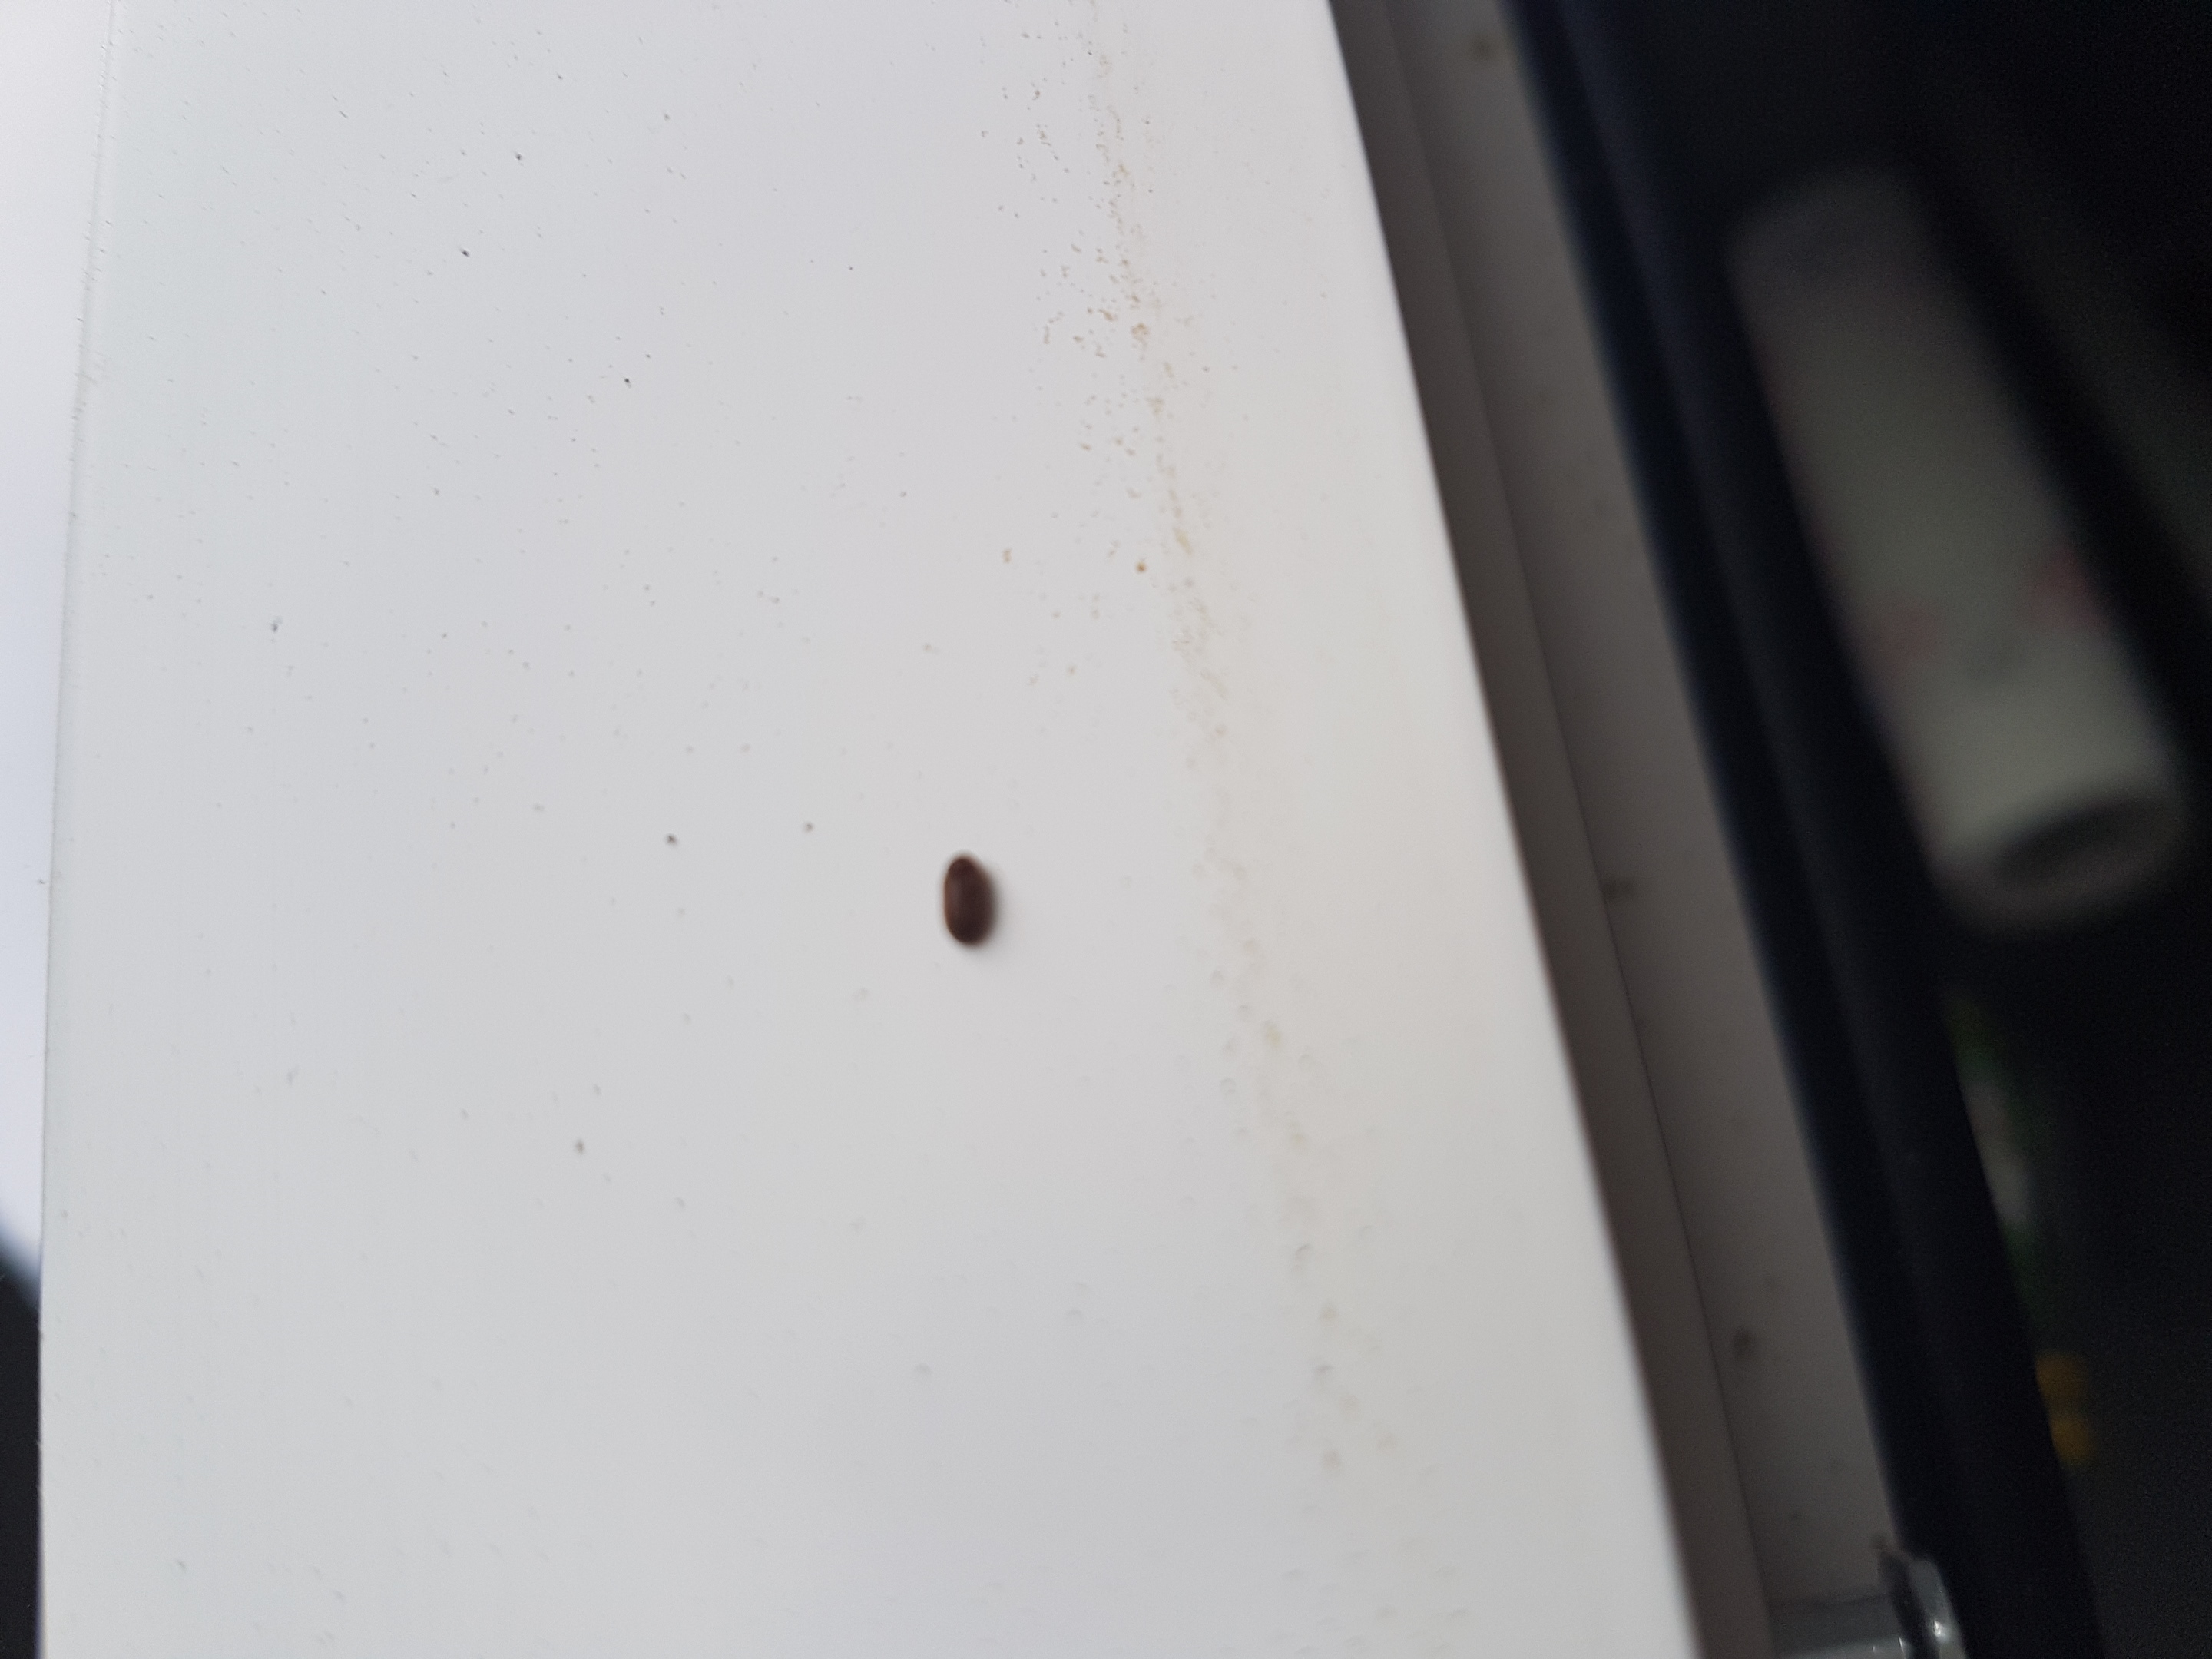 Komische ganz kleine braune käferchen? (Insekten, Plage ...